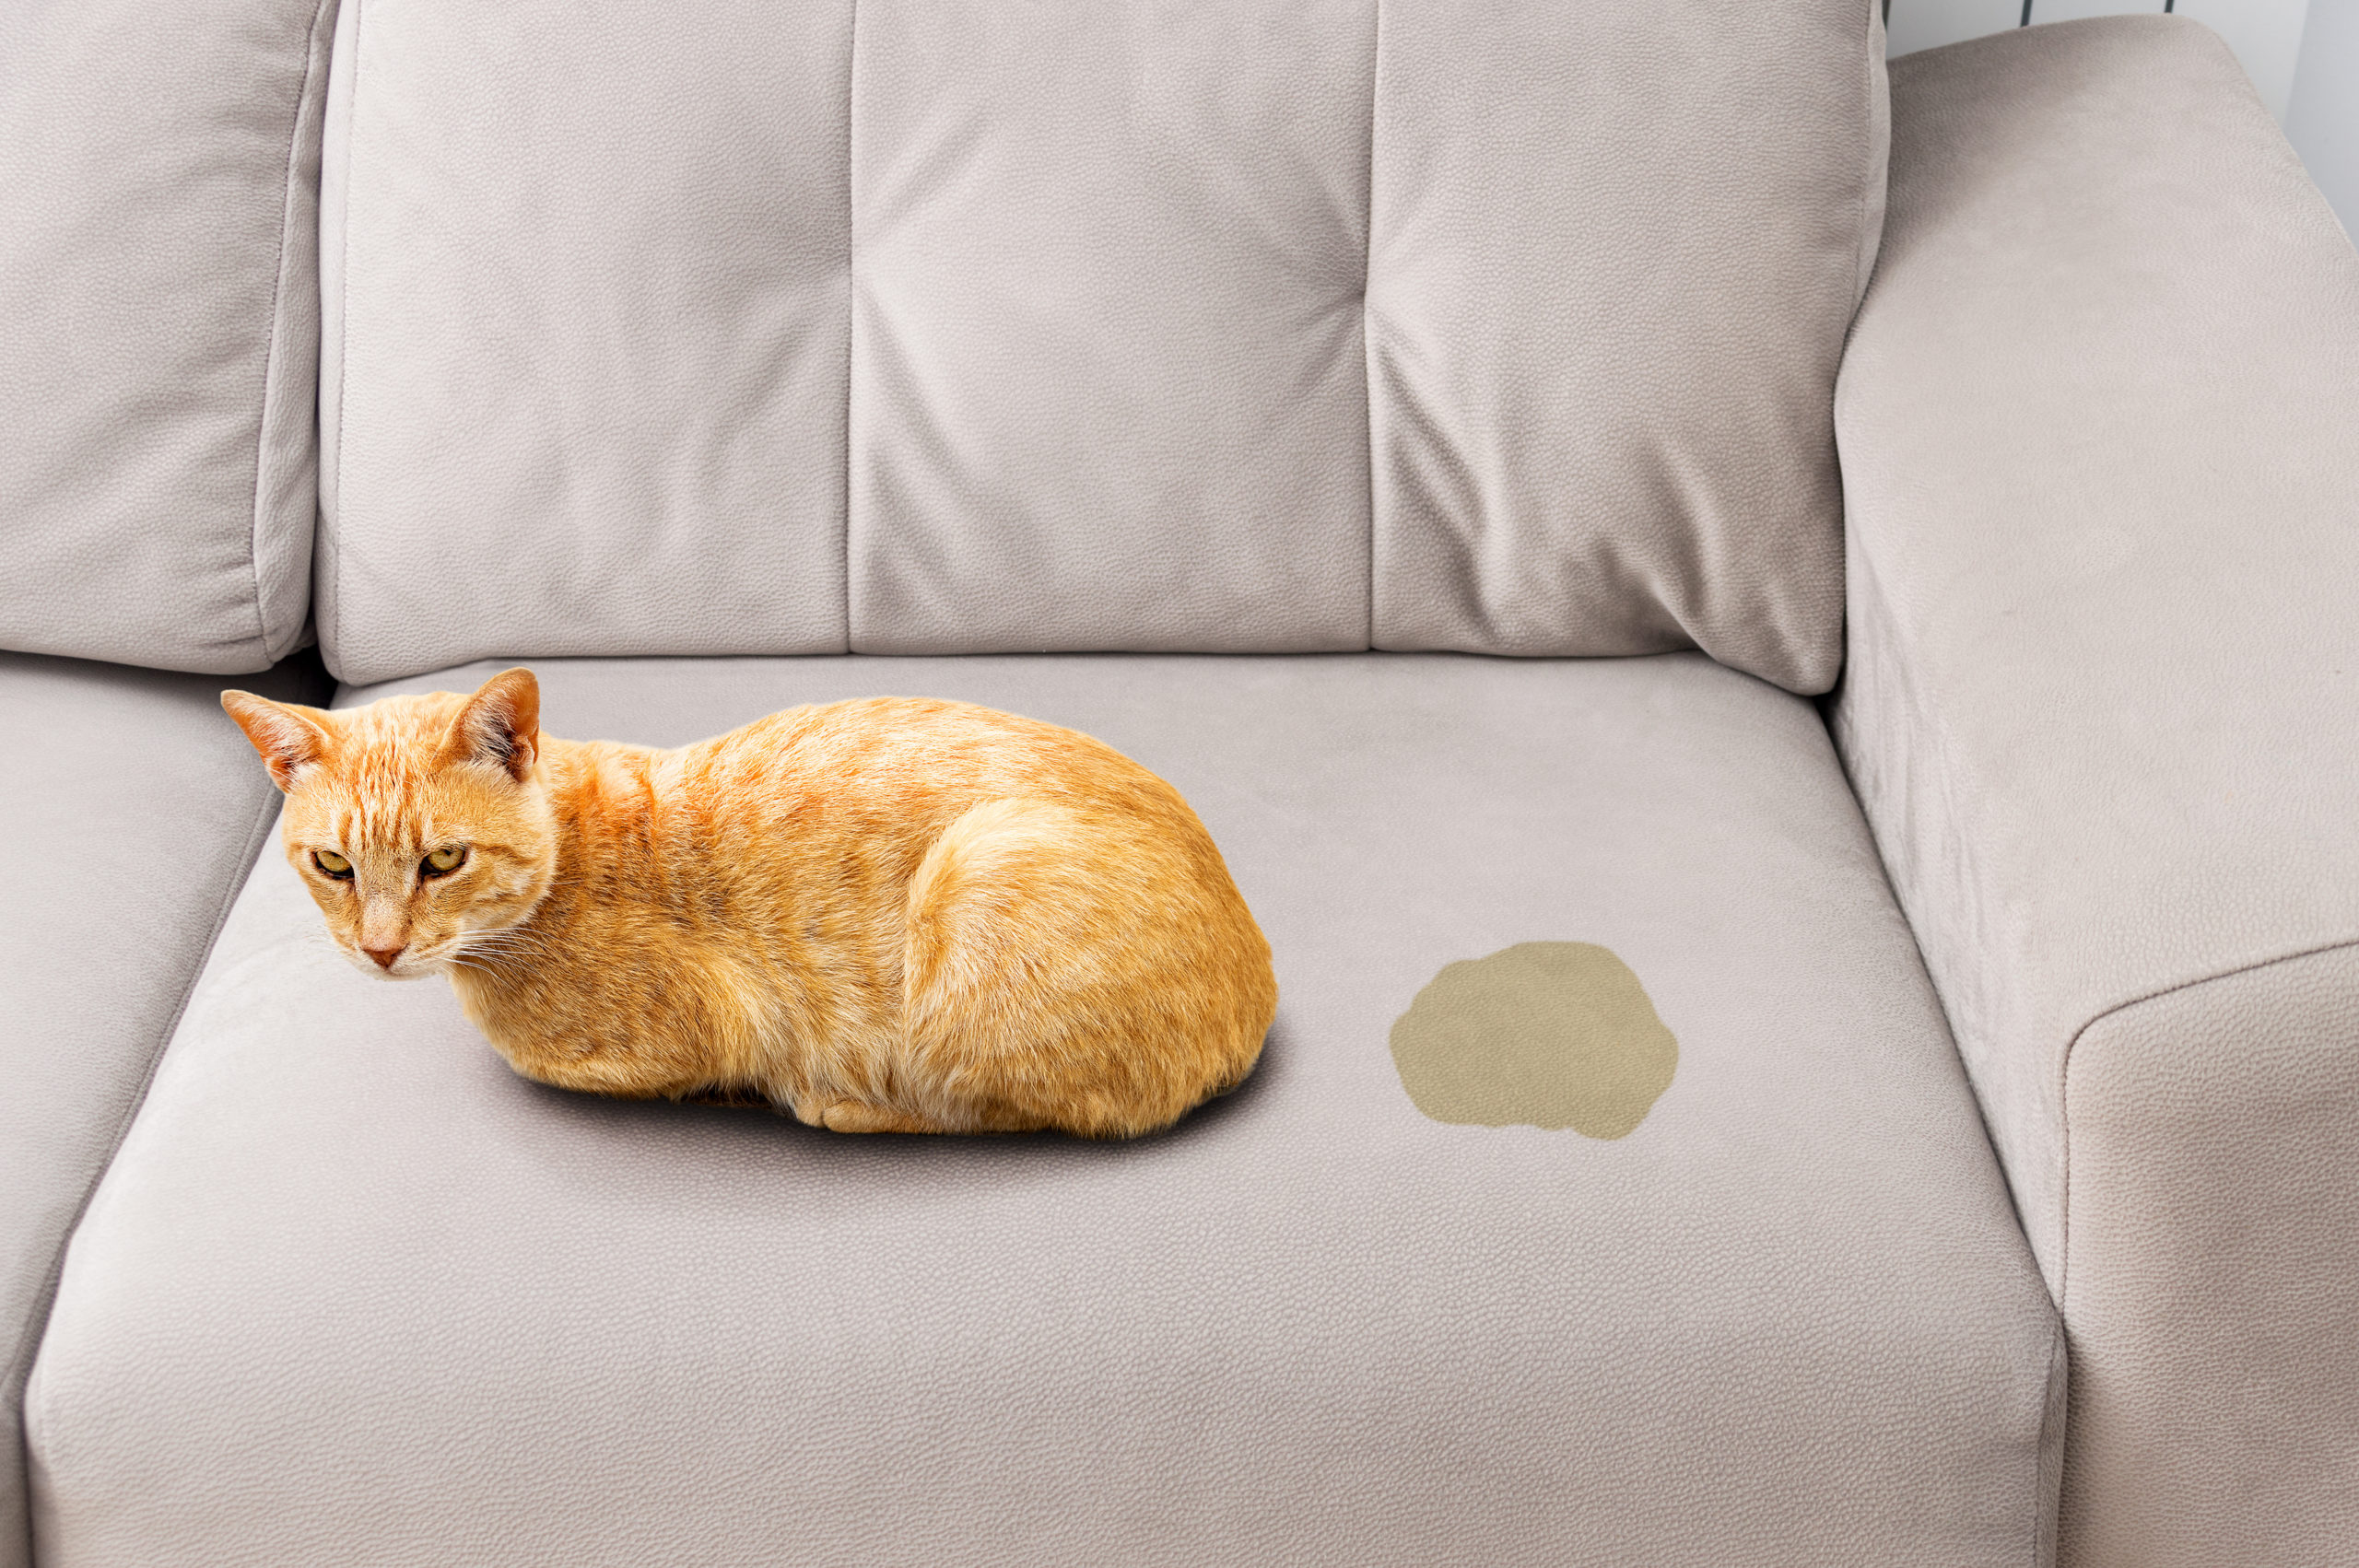 gatto che ha fatto la pipì sul divano, non è un dispetto ma un disagio.